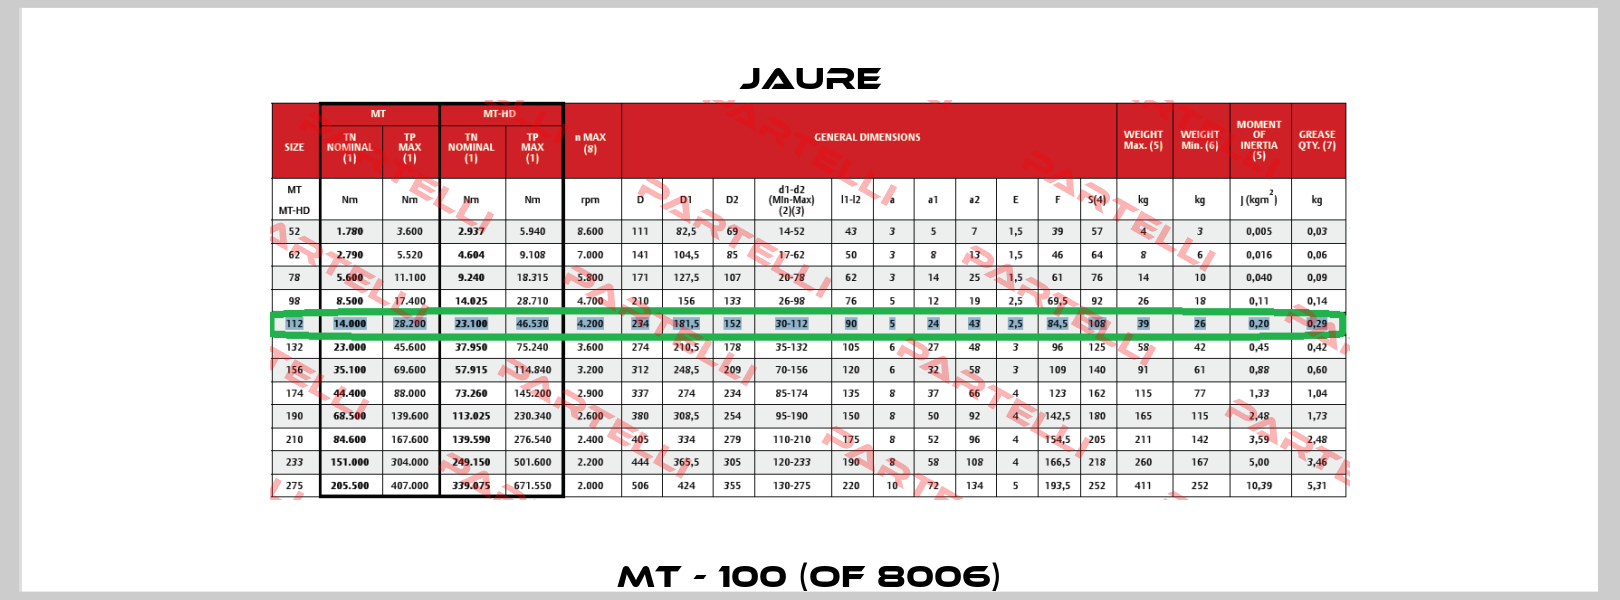 MT - 100 (OF 8006) Jaure